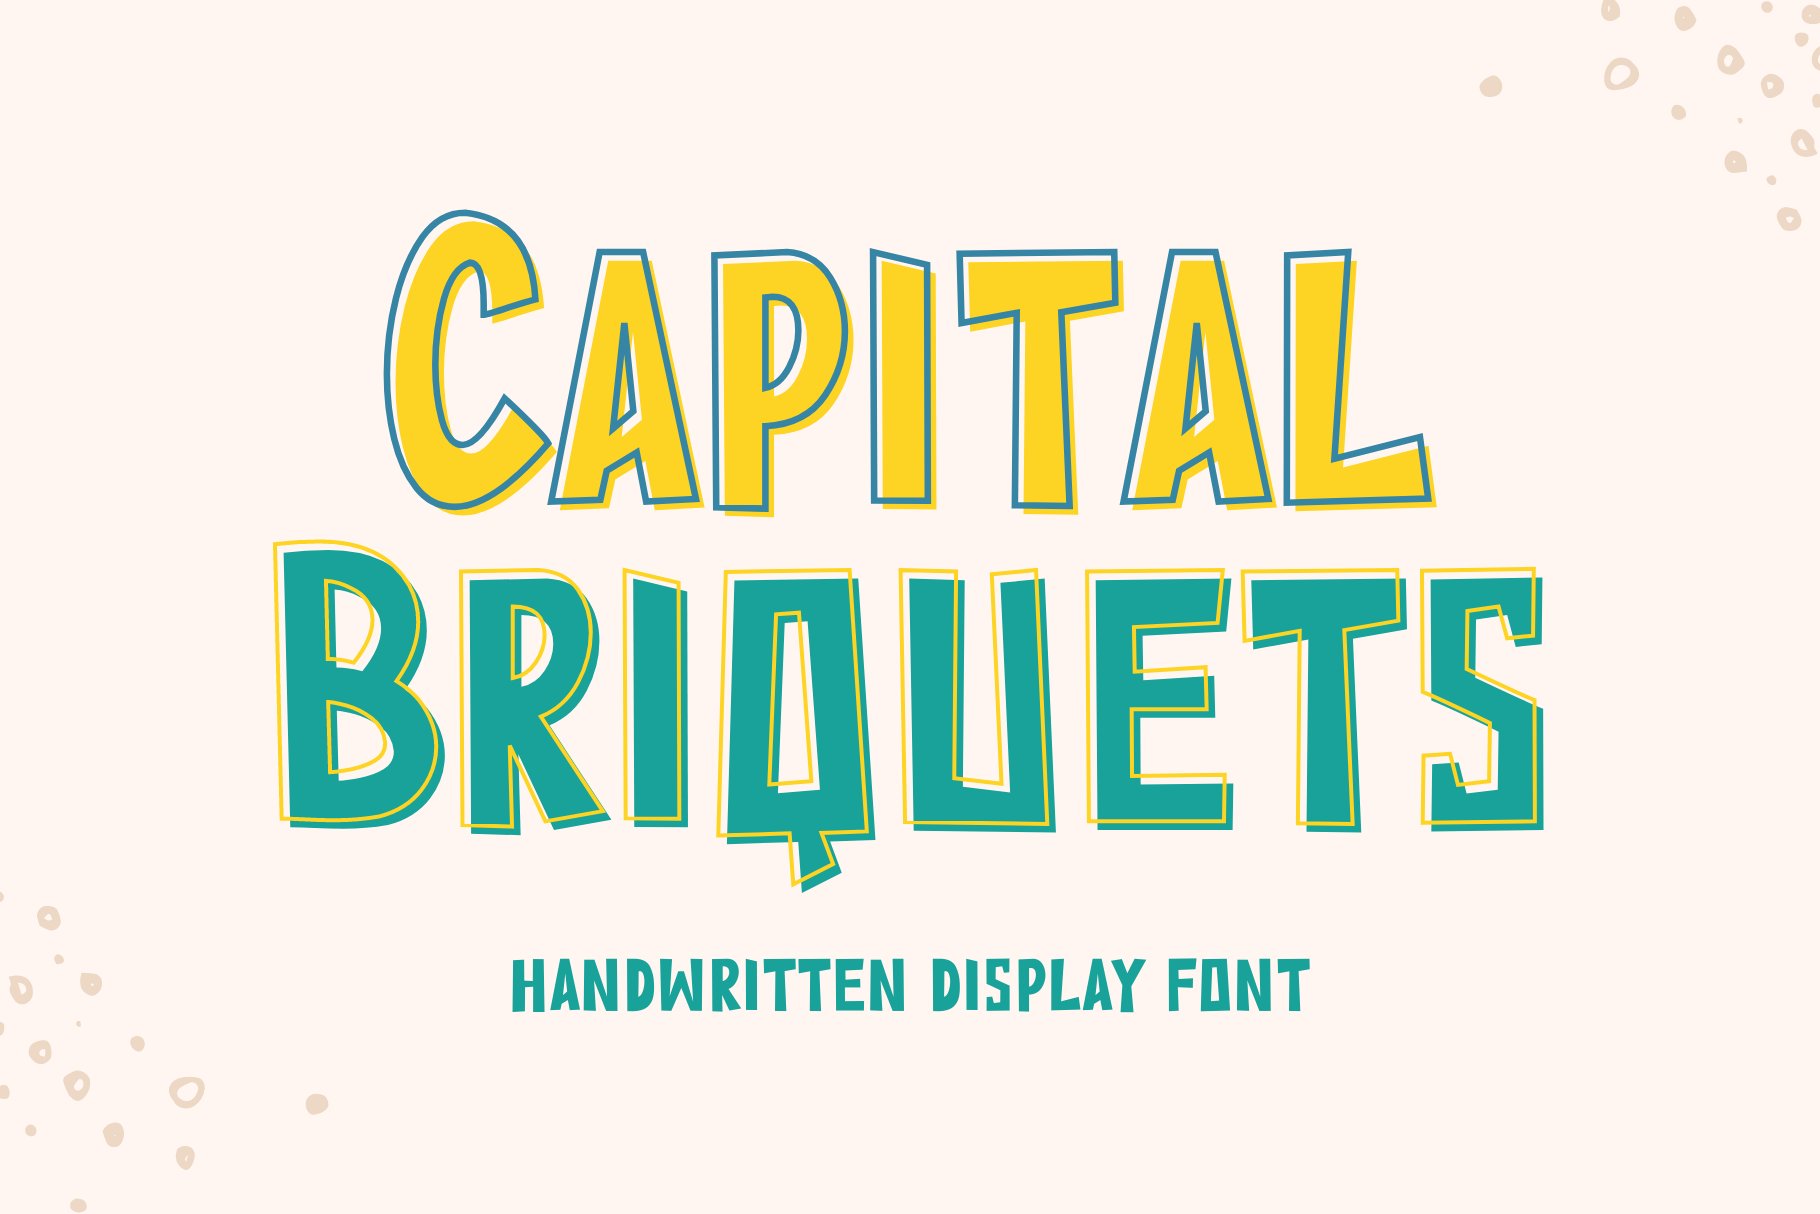 Capital Briquets - Display Font cover image.